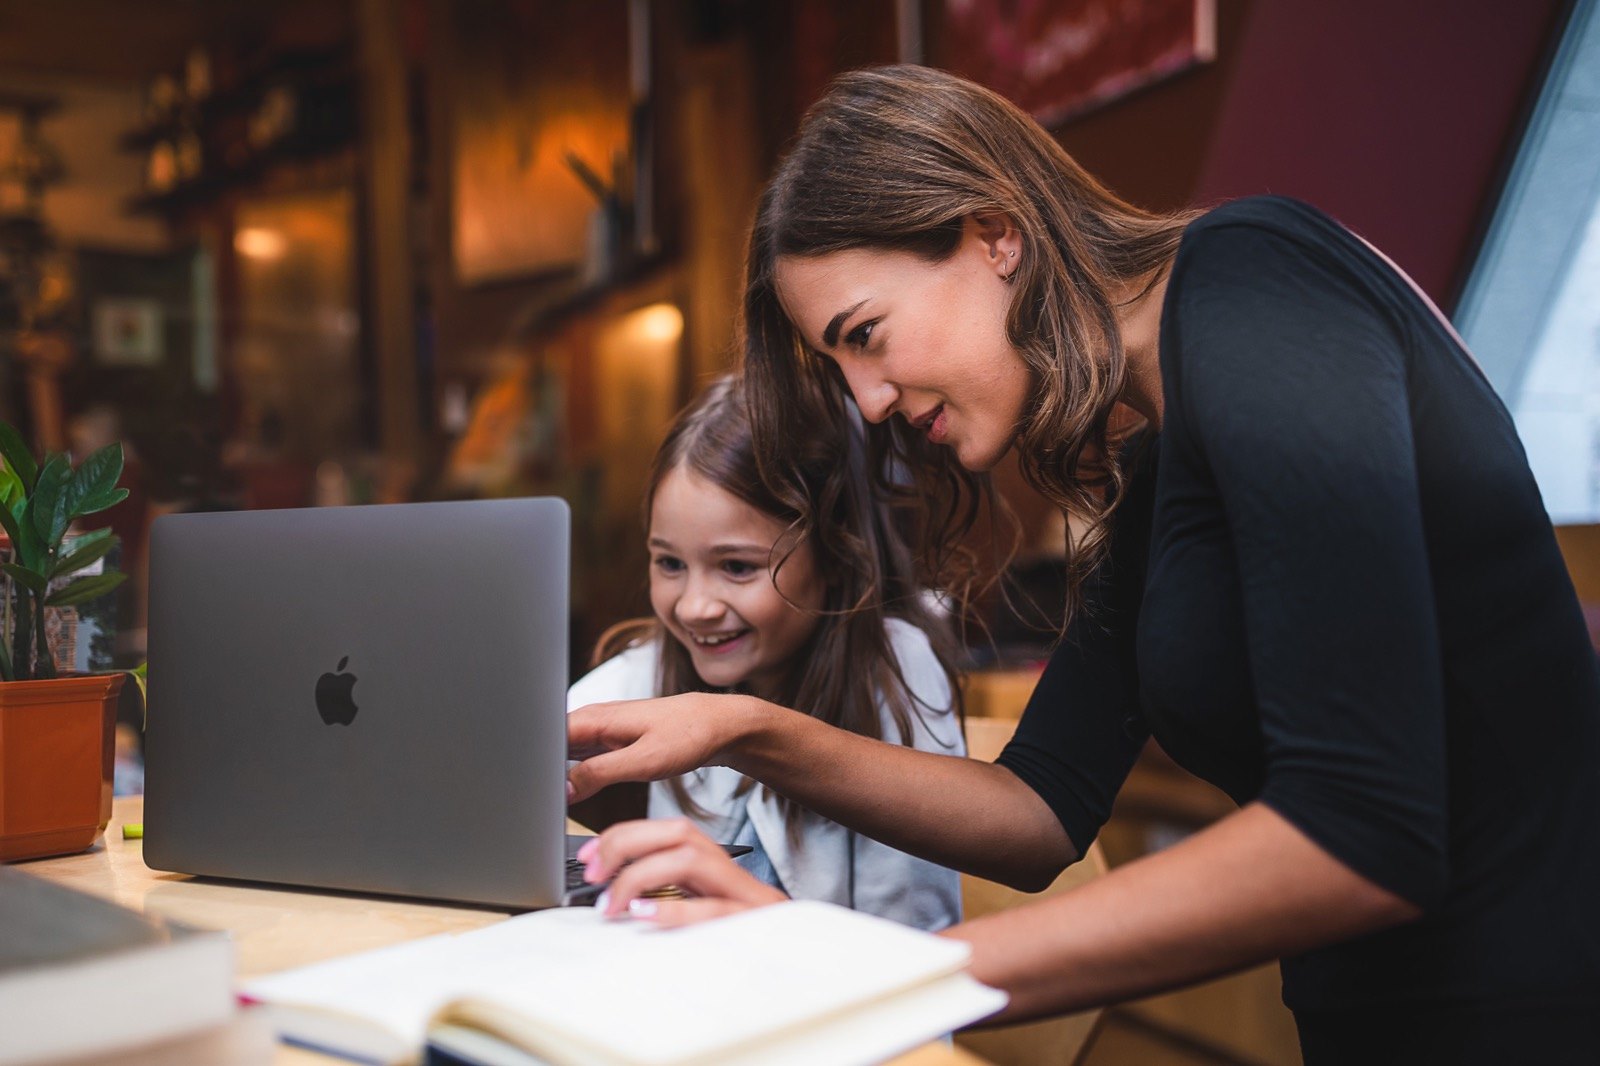 თუ თქვენი შვილისთვის კომპიუტერის შერჩევის პროცესში ხართ, MacBook-ი საუკეთესო გადაწყვეტილებაა - მისი შესაძლებლობები ამოუწურავია